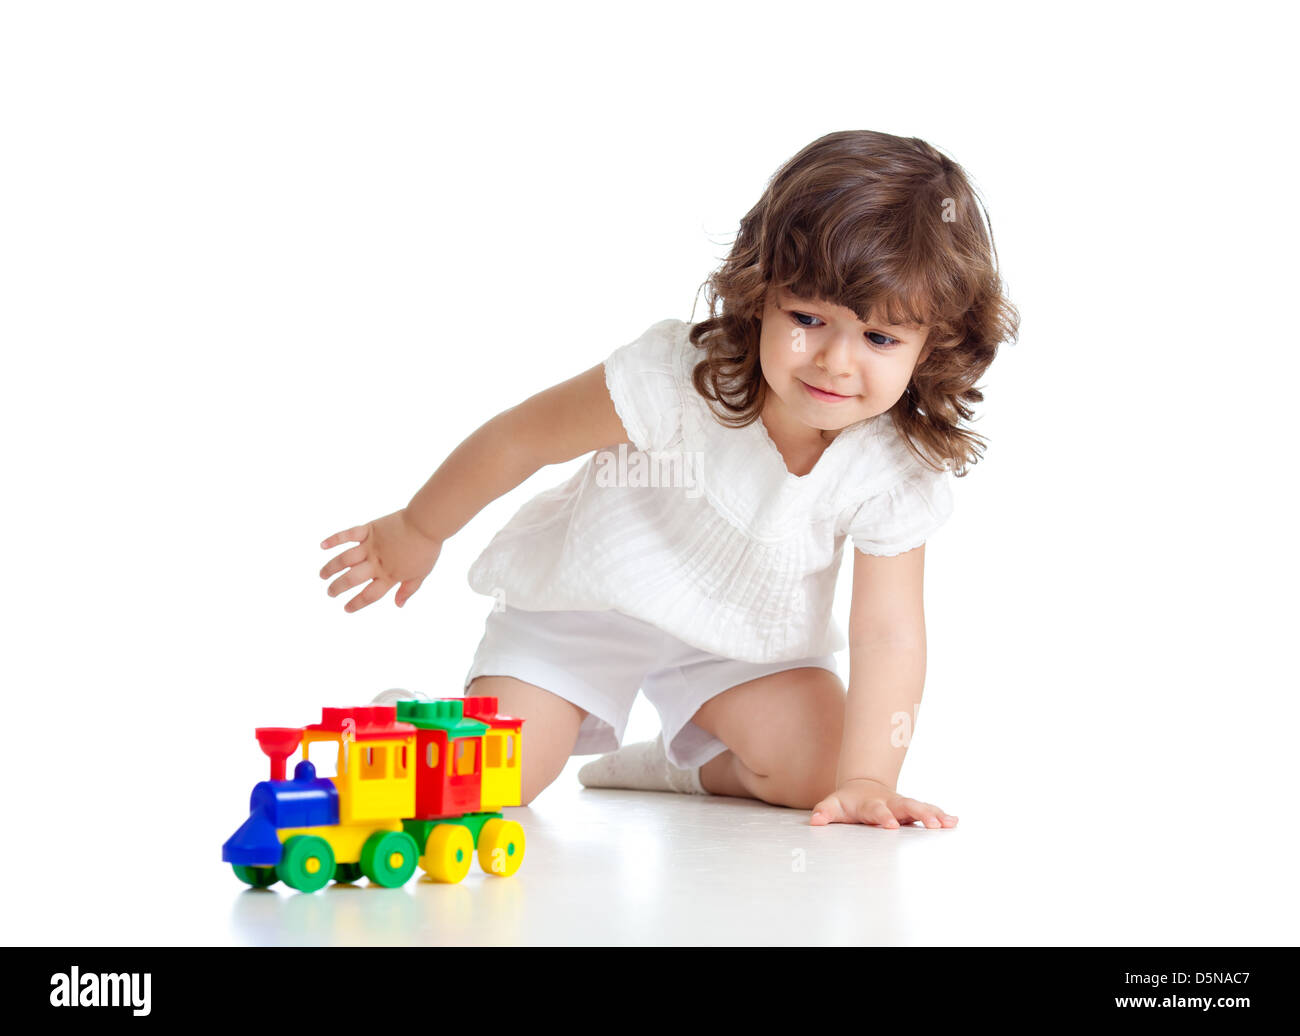 Kind spielt mit bunten Spielzeug. Isoliert auf weißem Hintergrund Stockfoto